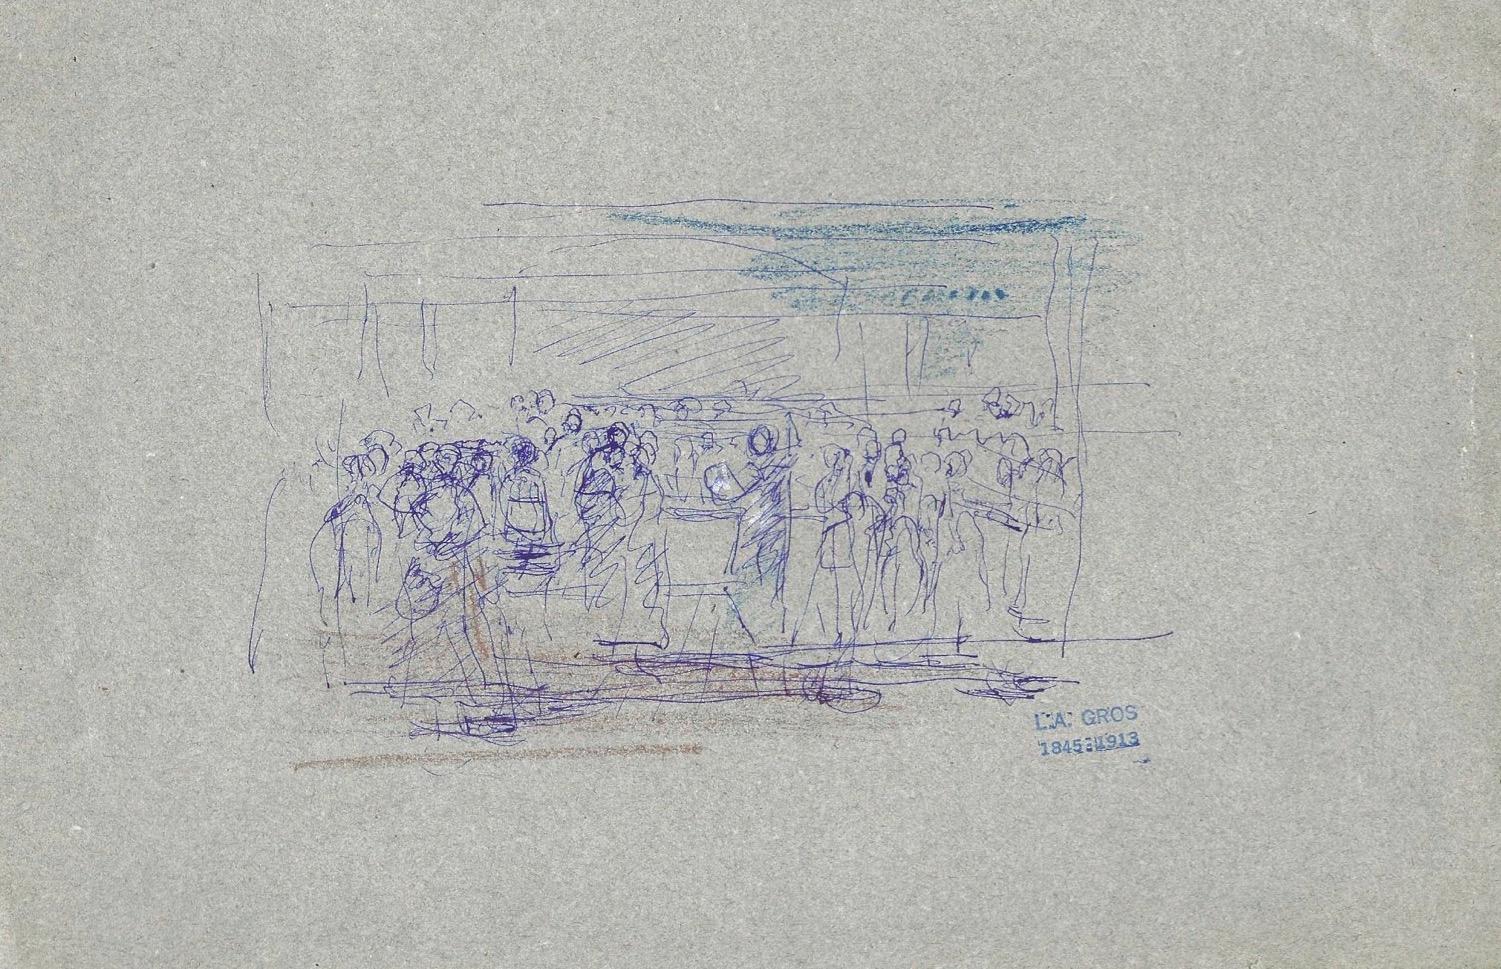 People in the Room (Les gens dans la pièce) - dessin original à l'encre de L. A. Gros - début du XXe siècle